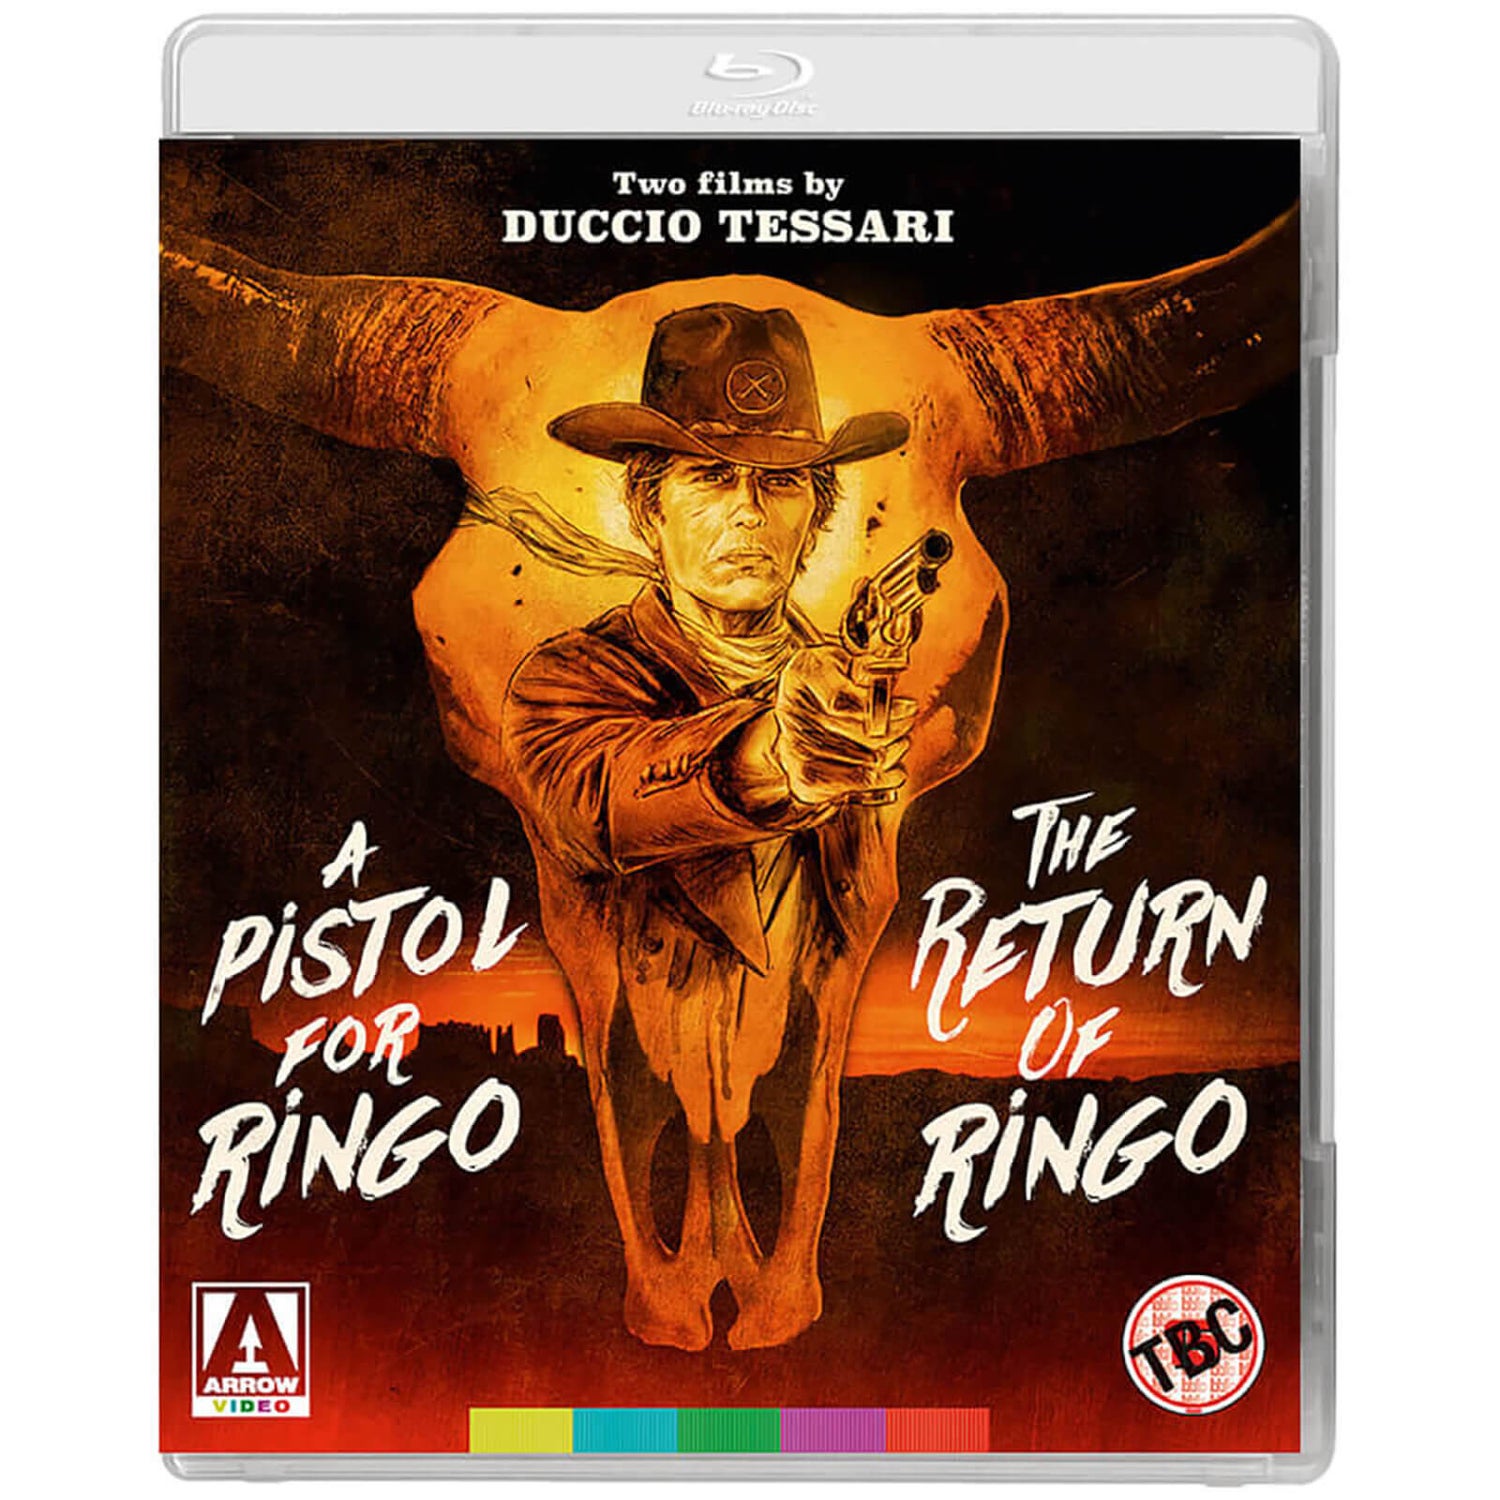 A Pistol for Ringo & The Return of Ringo | Two Films by Duccio Tessari | Blu-ray